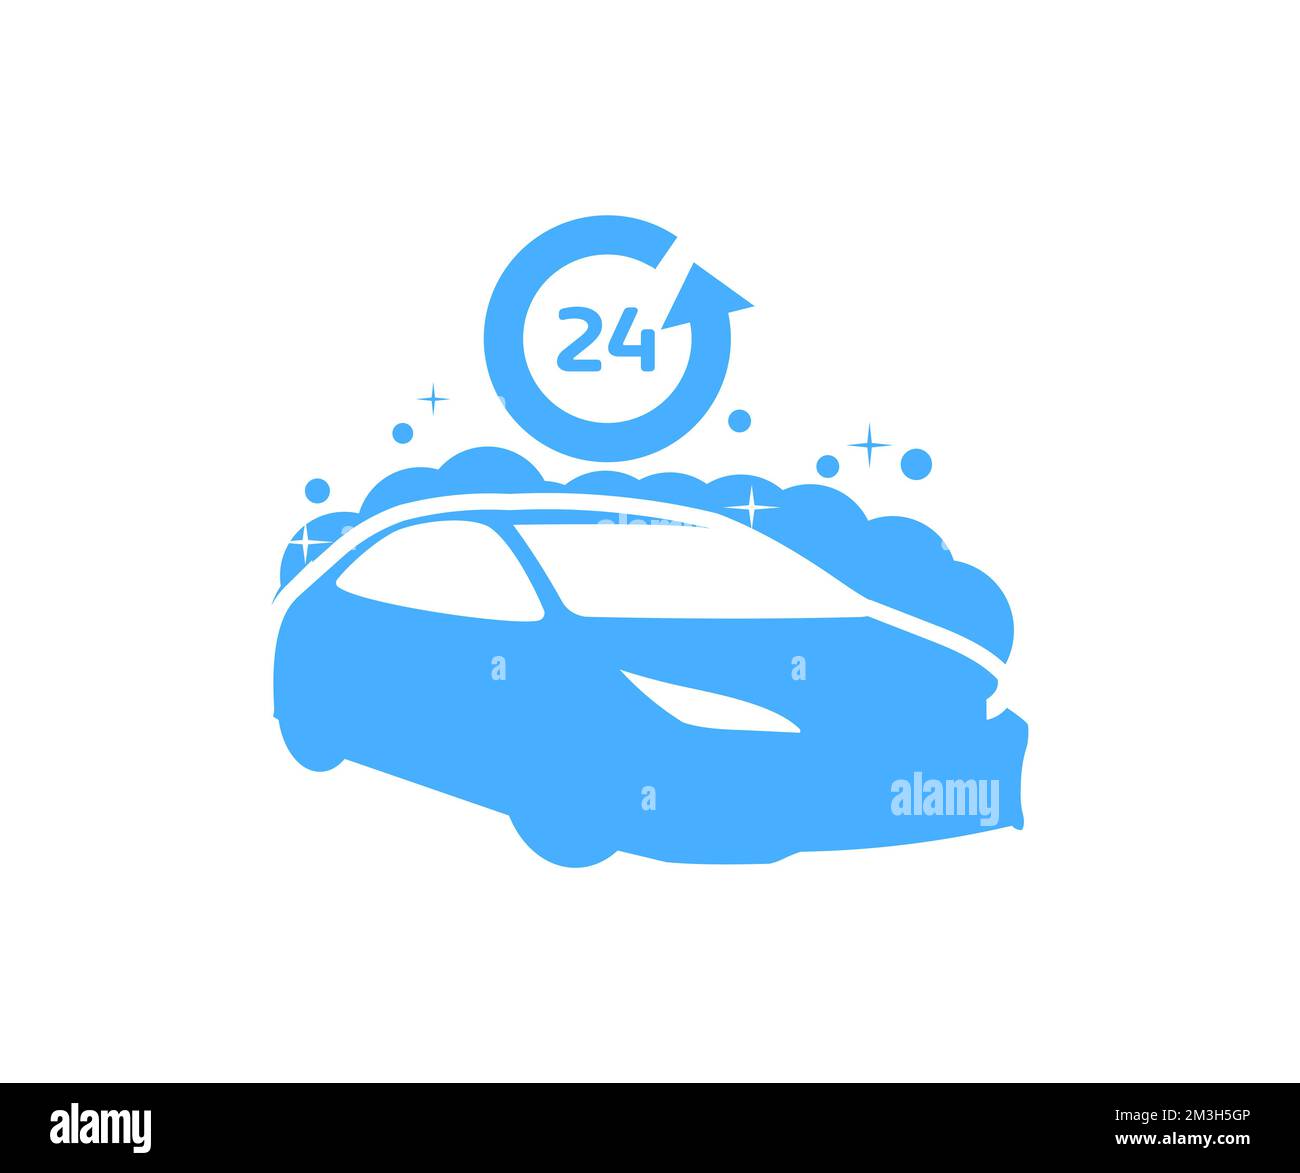 Car Wash concept, 24 heures, conception du logo Automotive Cleaning. Nettoyage et polissage automatiques. Lavage de voiture extérieur avec motif et illustration de vecteur de savon en mousse. Illustration de Vecteur